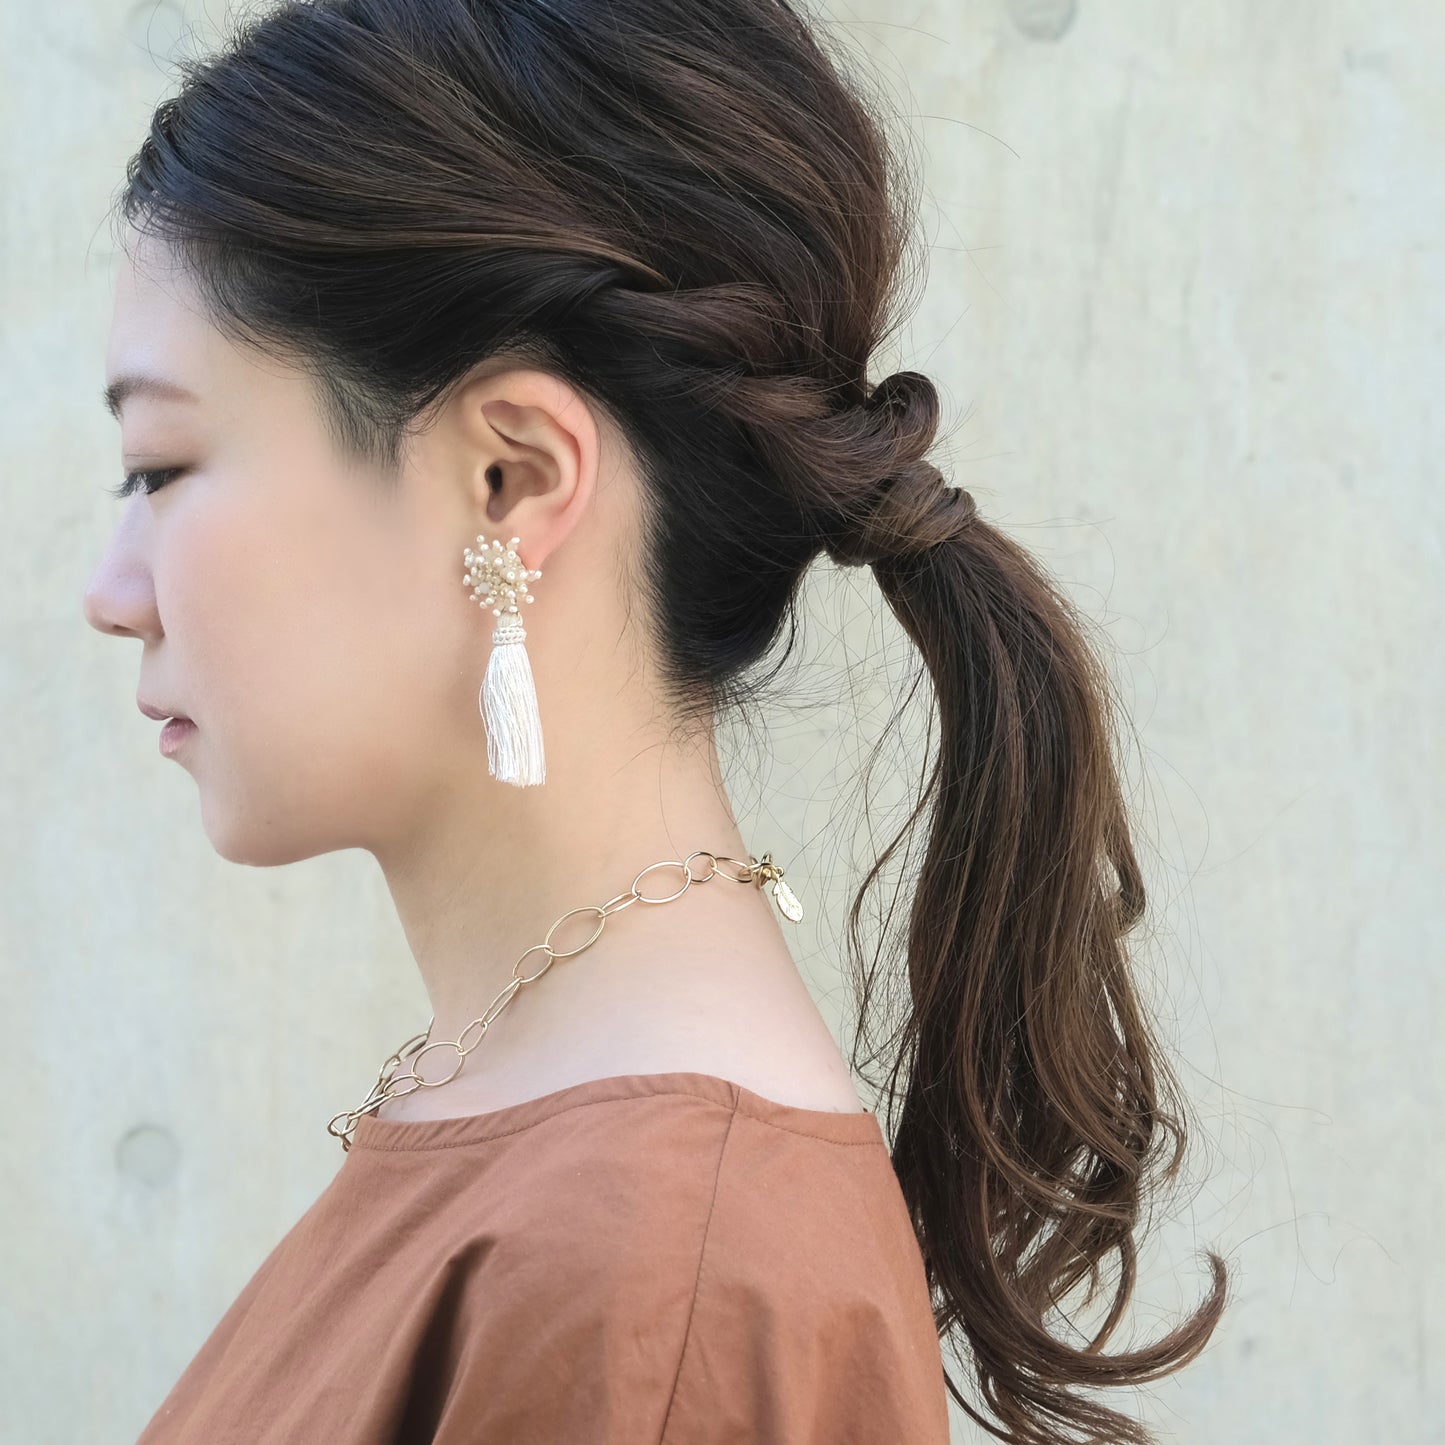 Bead motif x tassel earrings